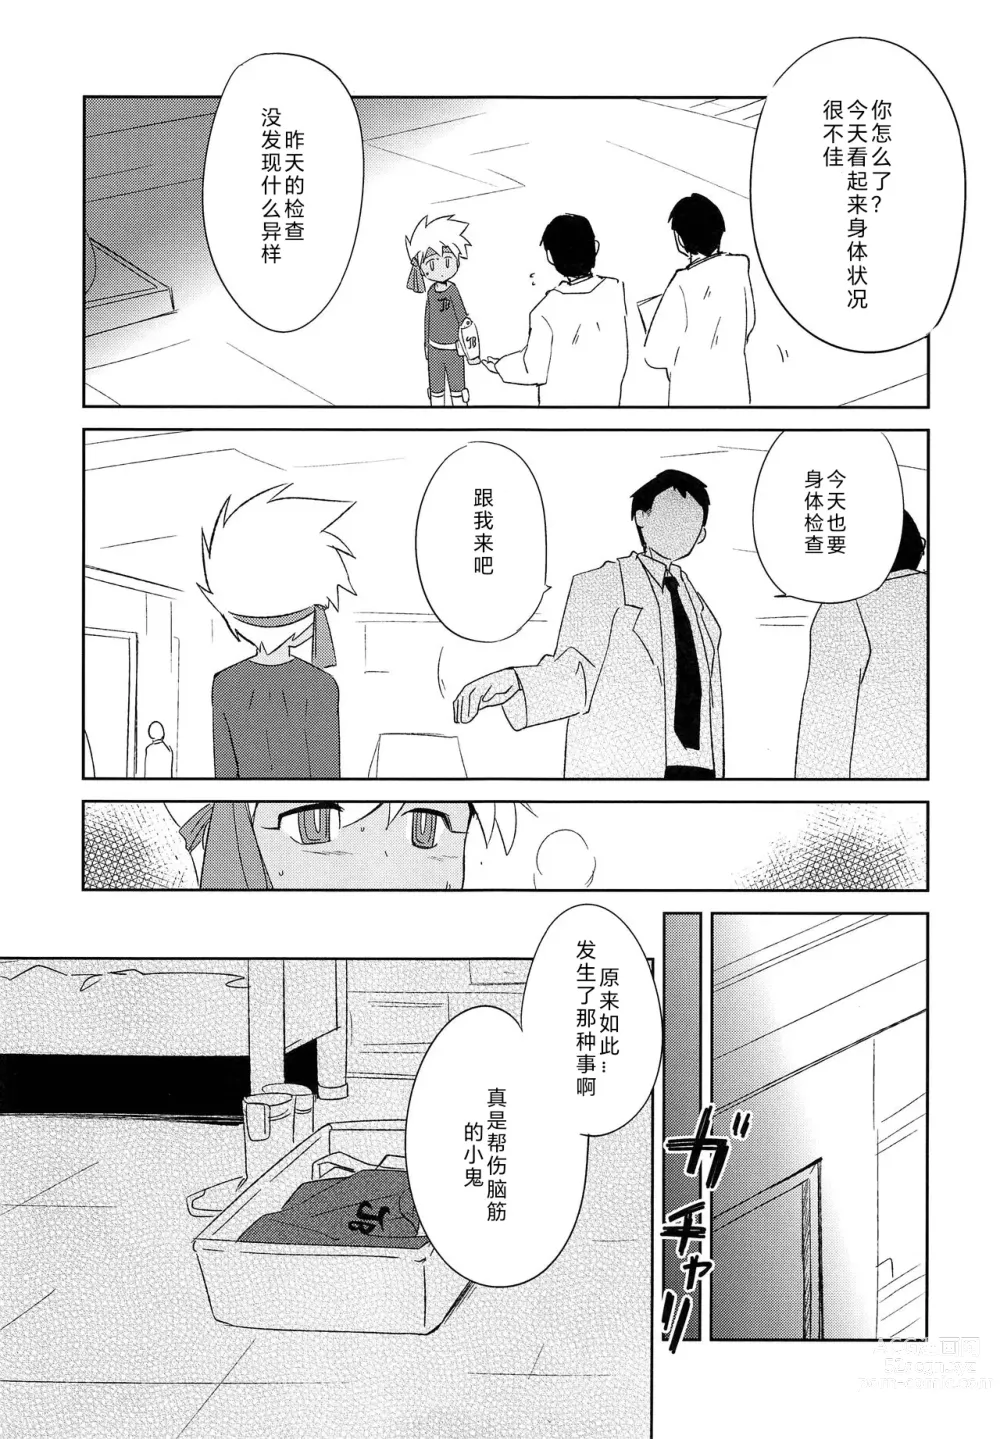 Page 16 of doujinshi Nukarumi